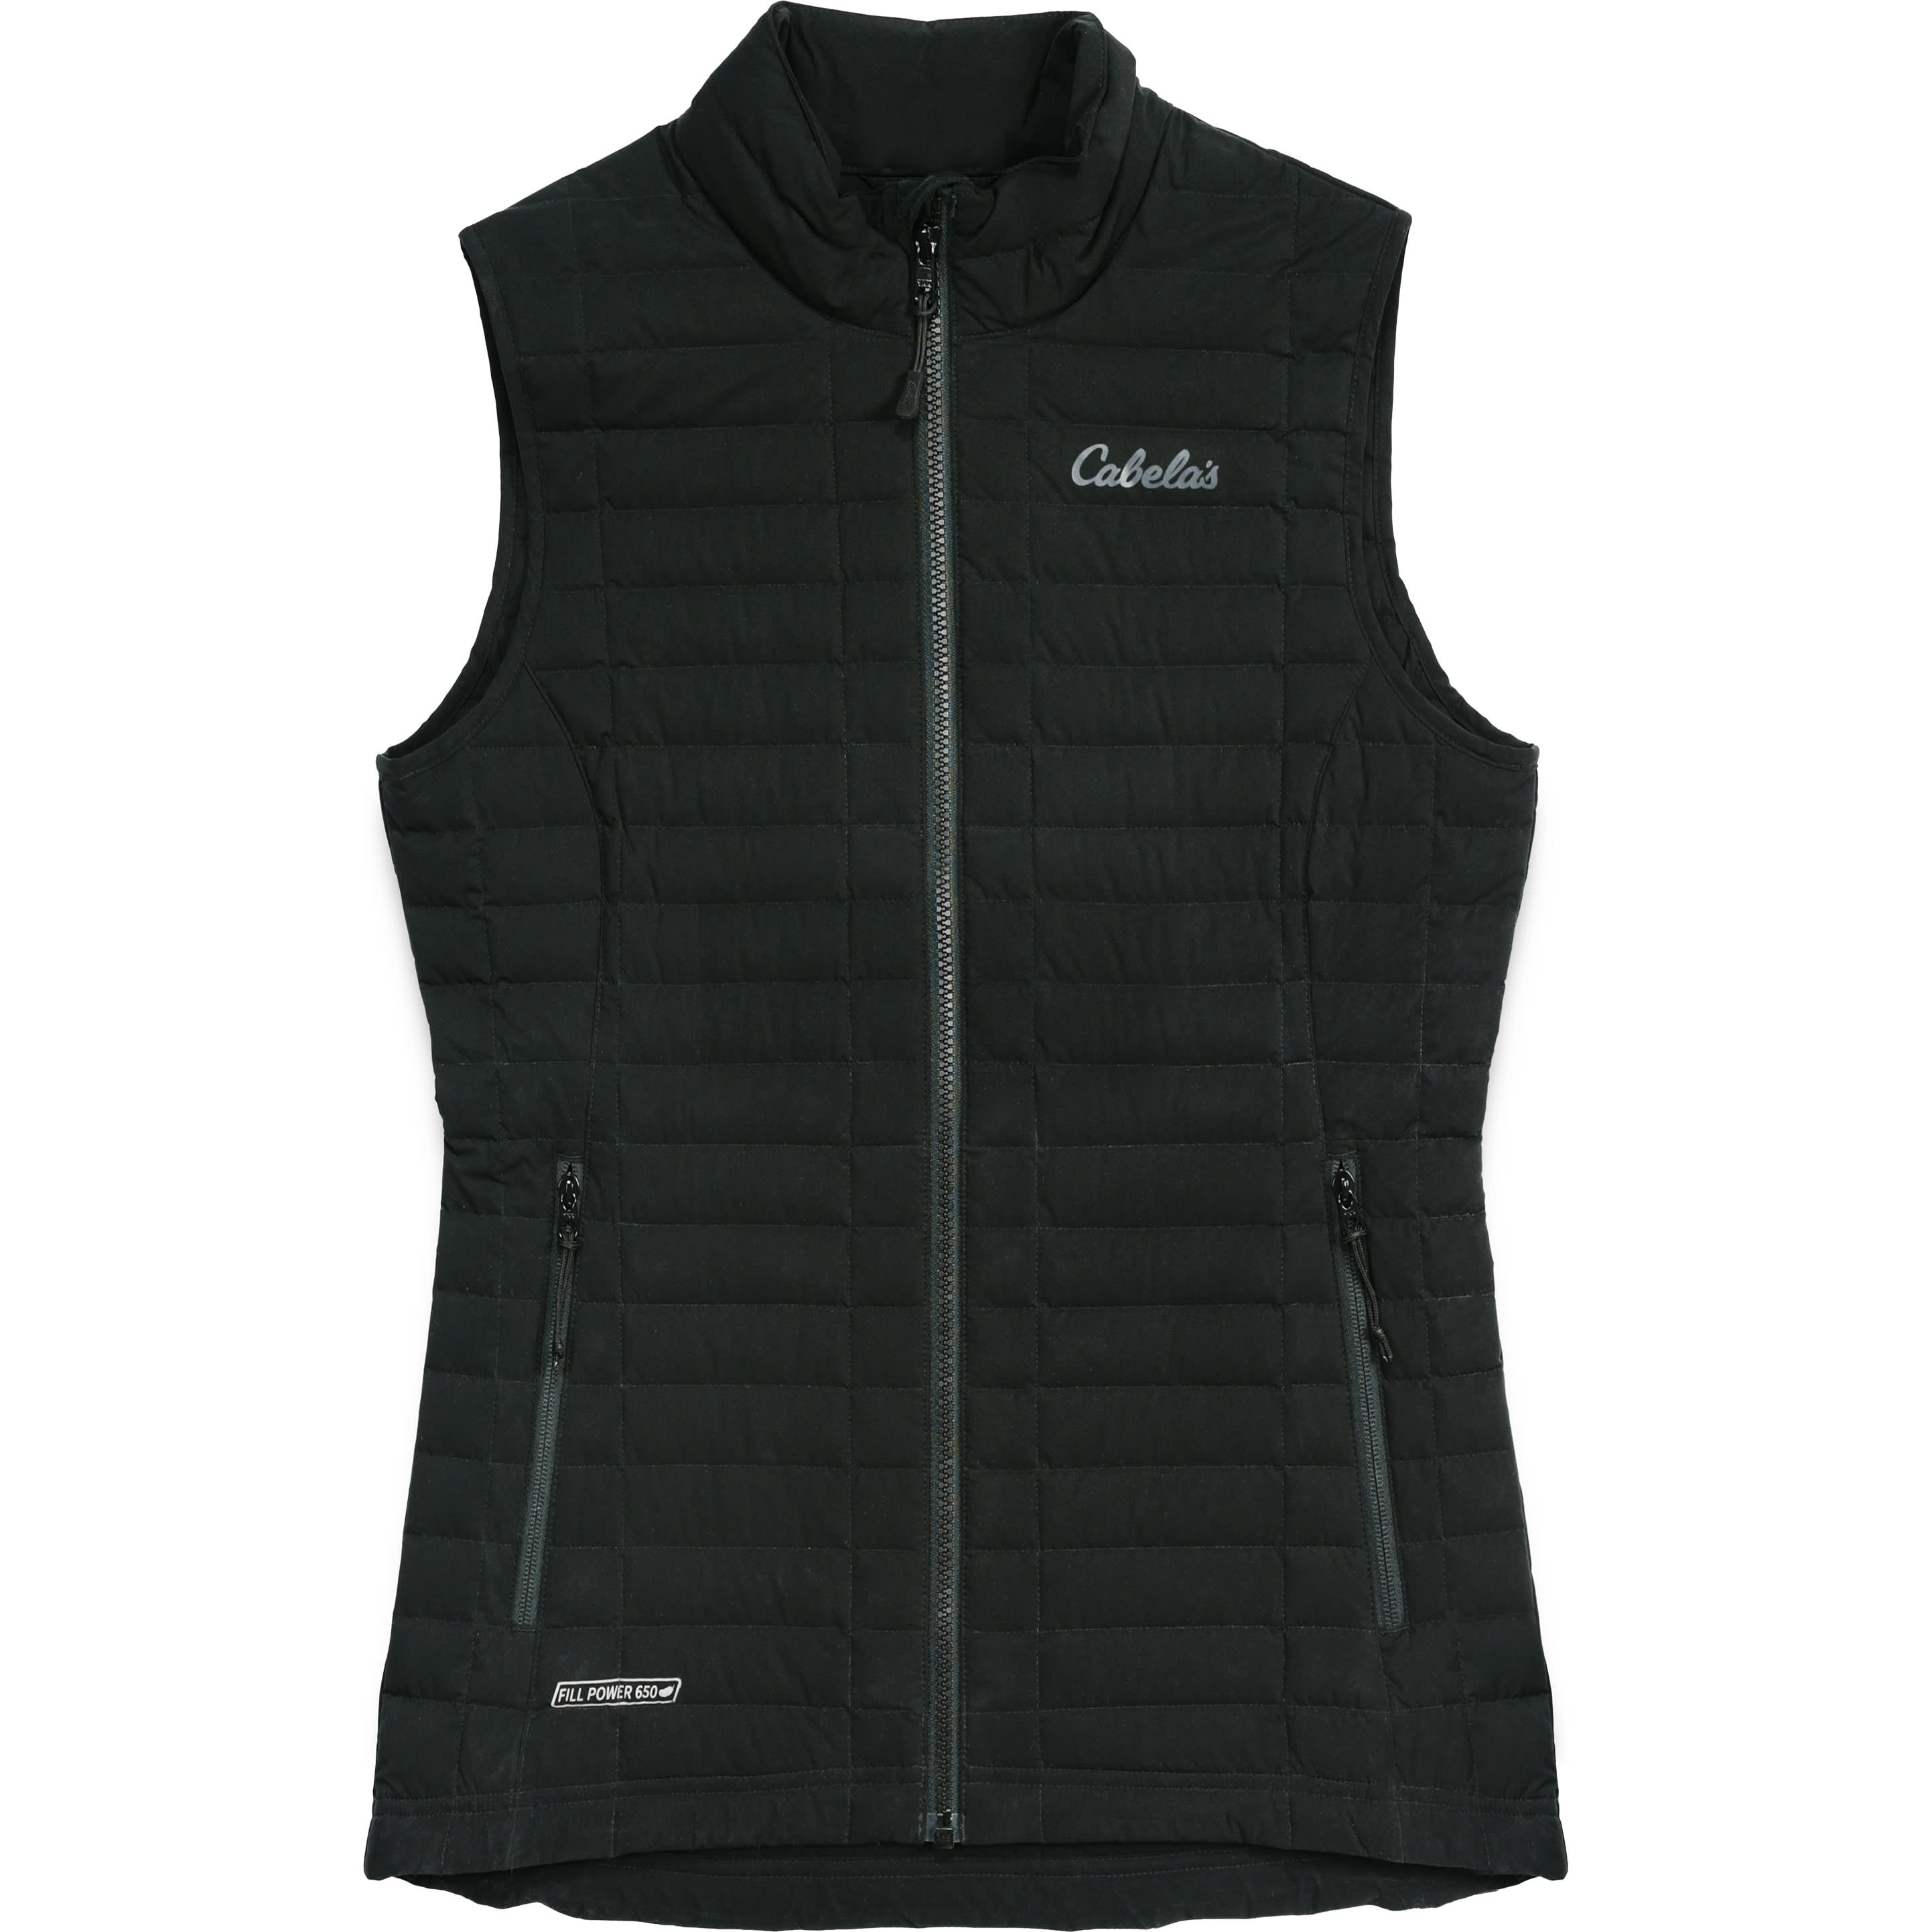 Cabela's Women's Fly-fishing vest